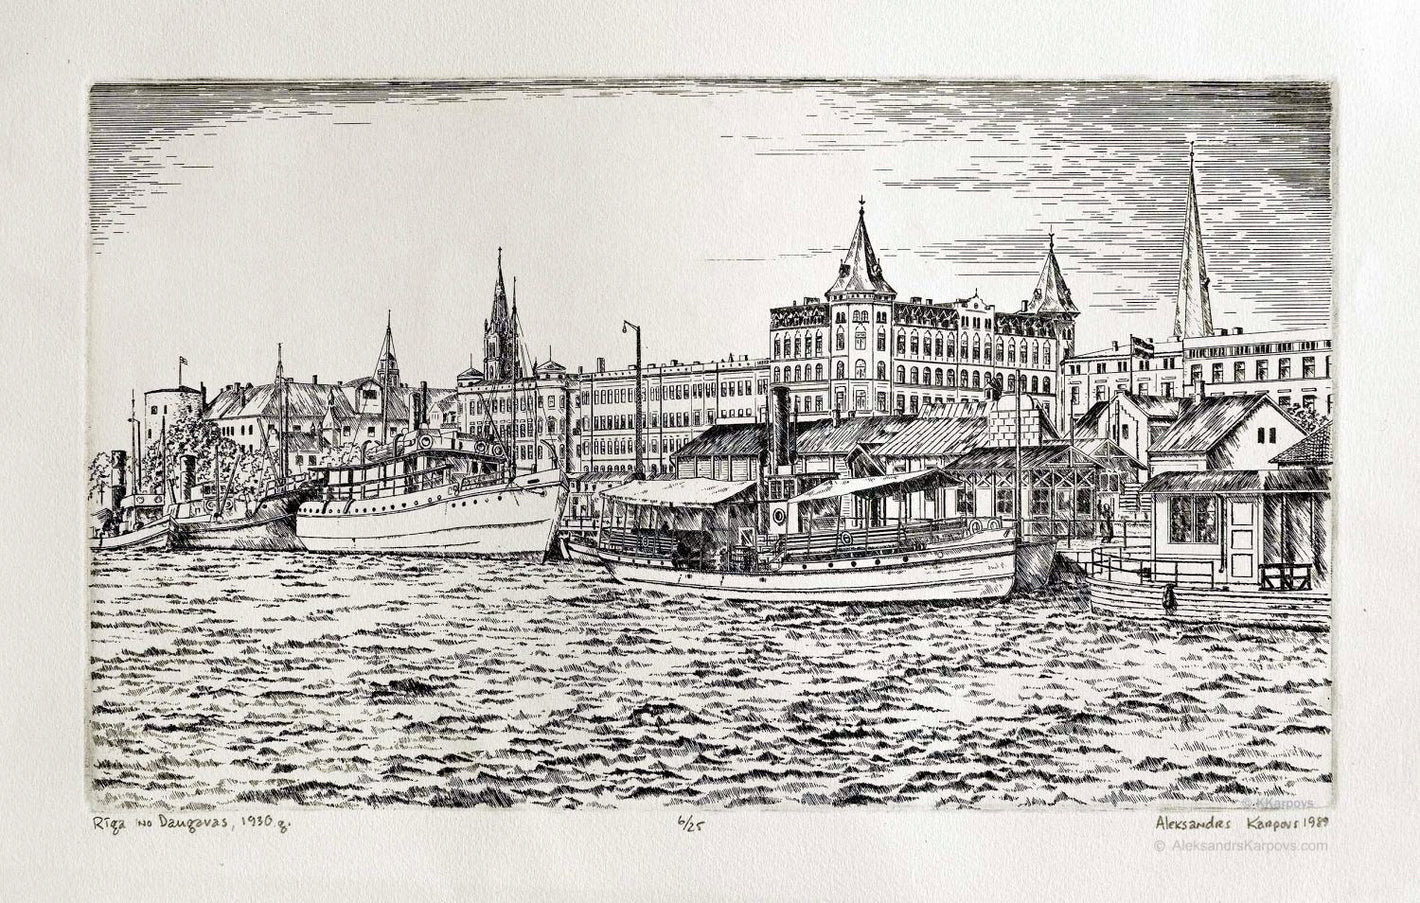 Riga from the Daugava in 1930